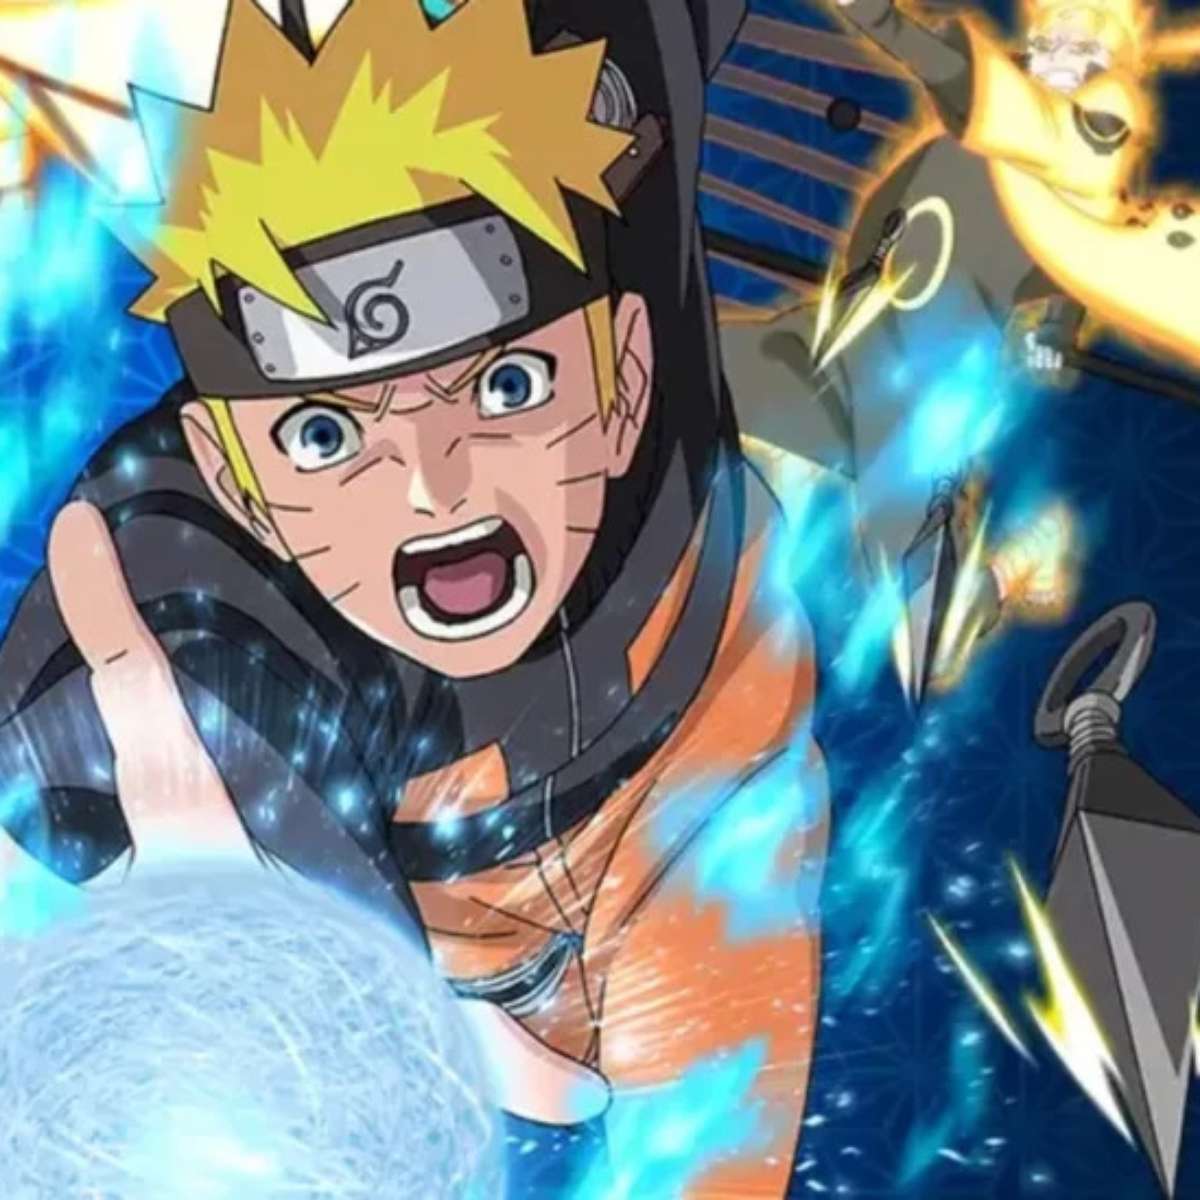 Naruto shippuden 6 temporada dublado quando sai